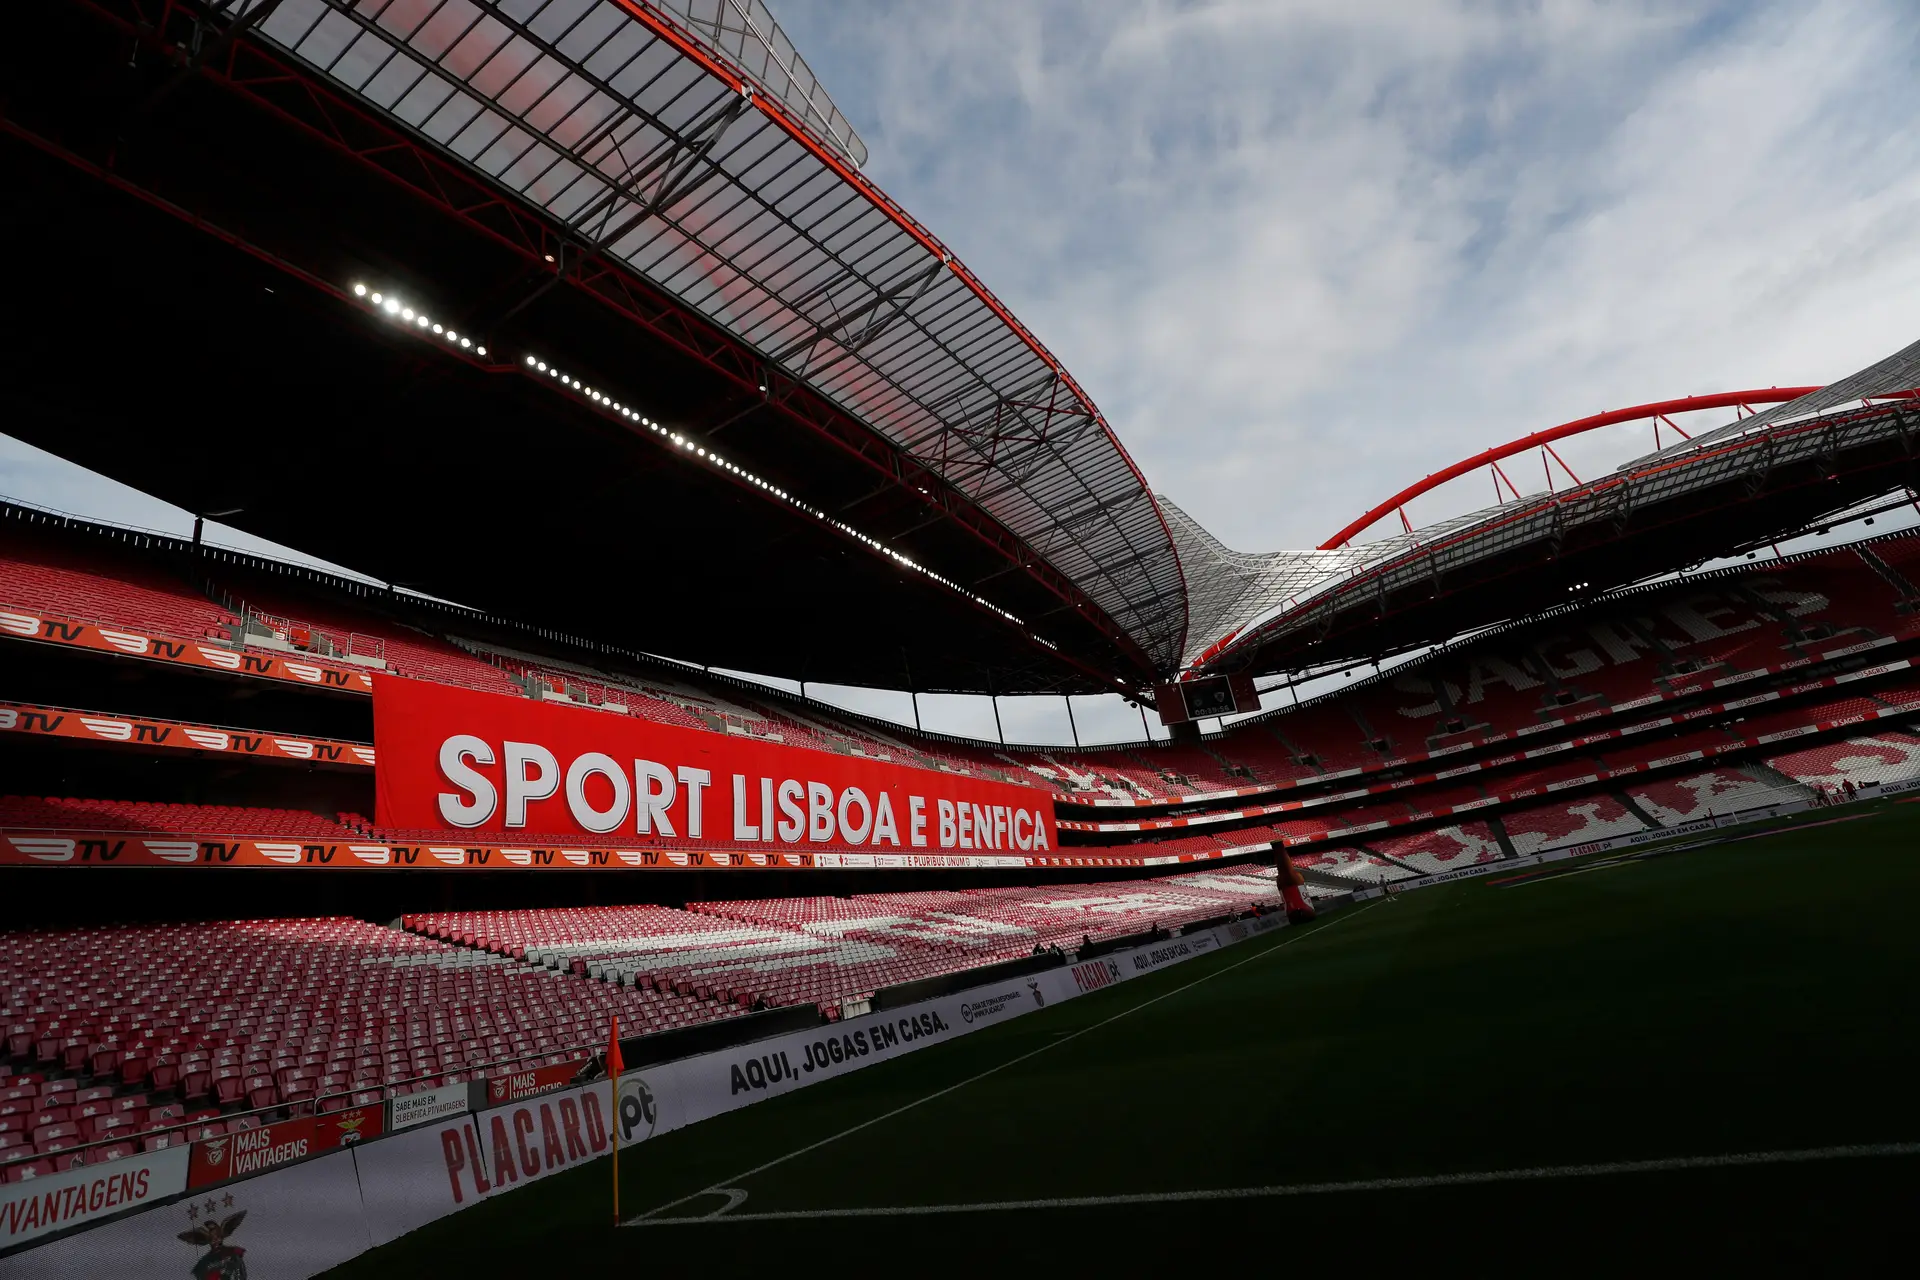 Estações de metro de Lisboa fechadas e trânsito condicionado devido a jogo do Benfica